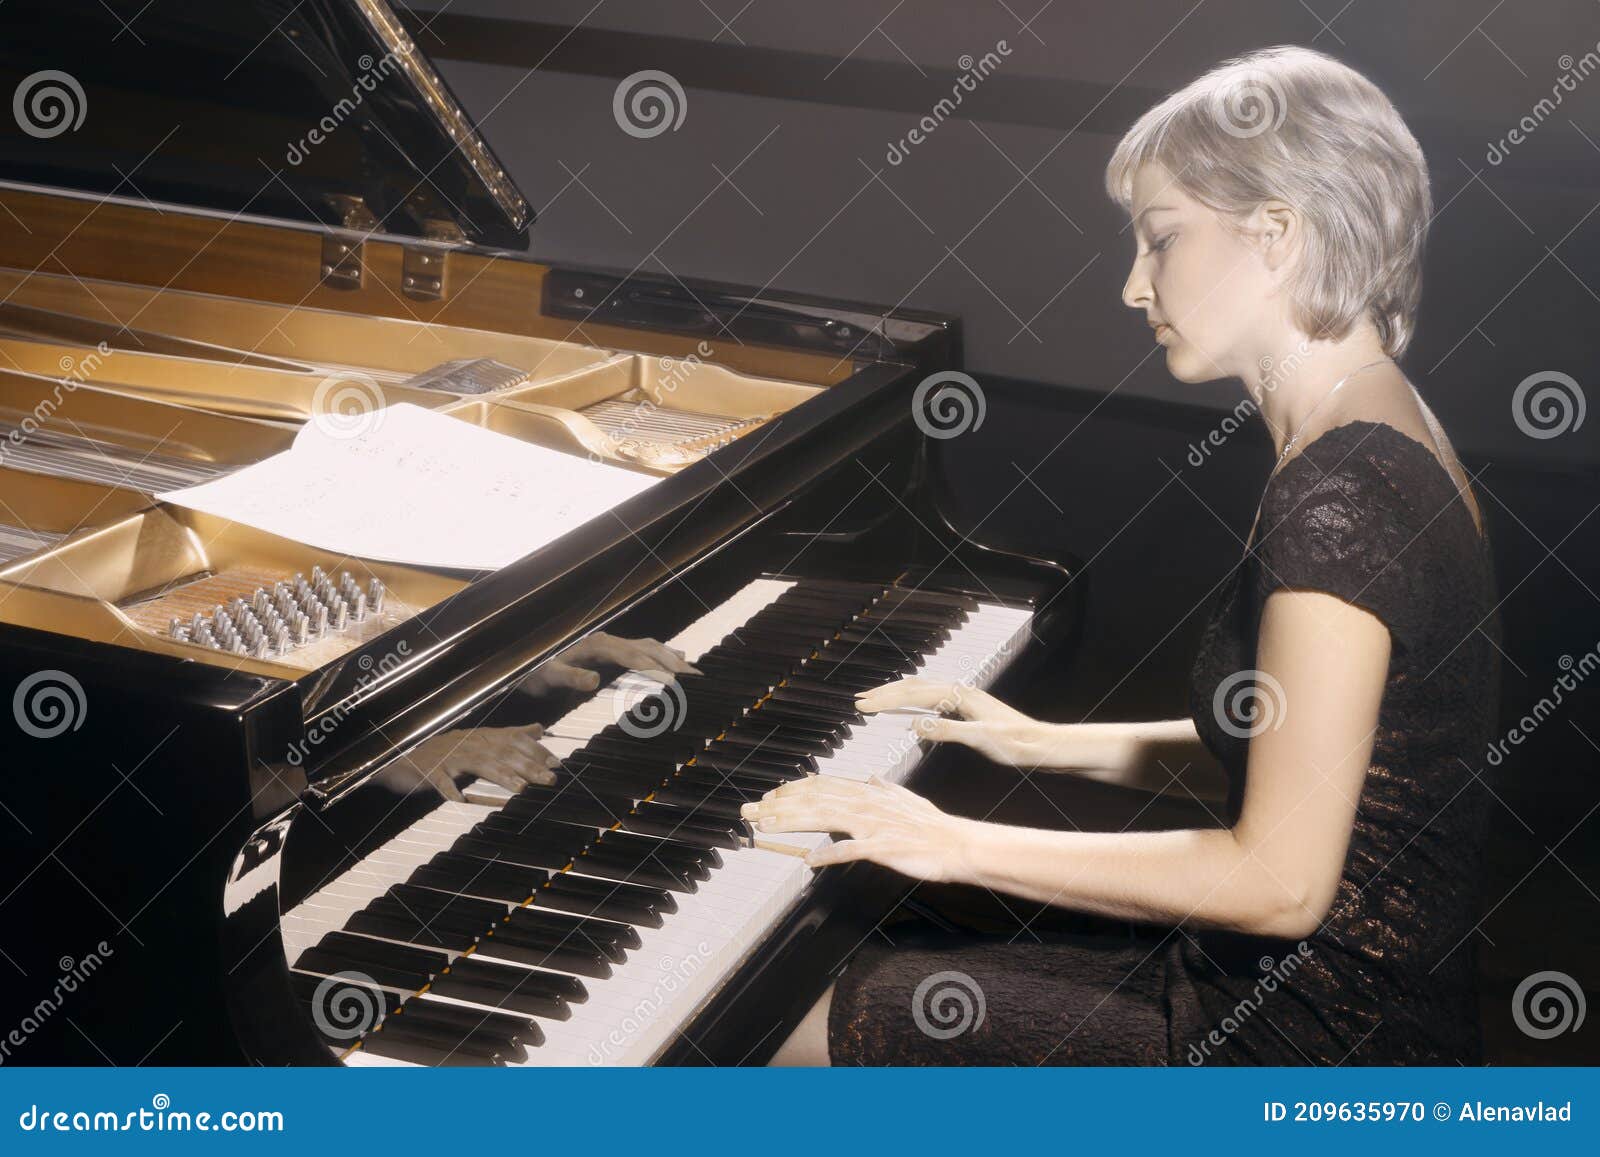 Does he play the piano. Великая пианистка женщина. Игра на пианино классика. Современные российские пианистки женщины.